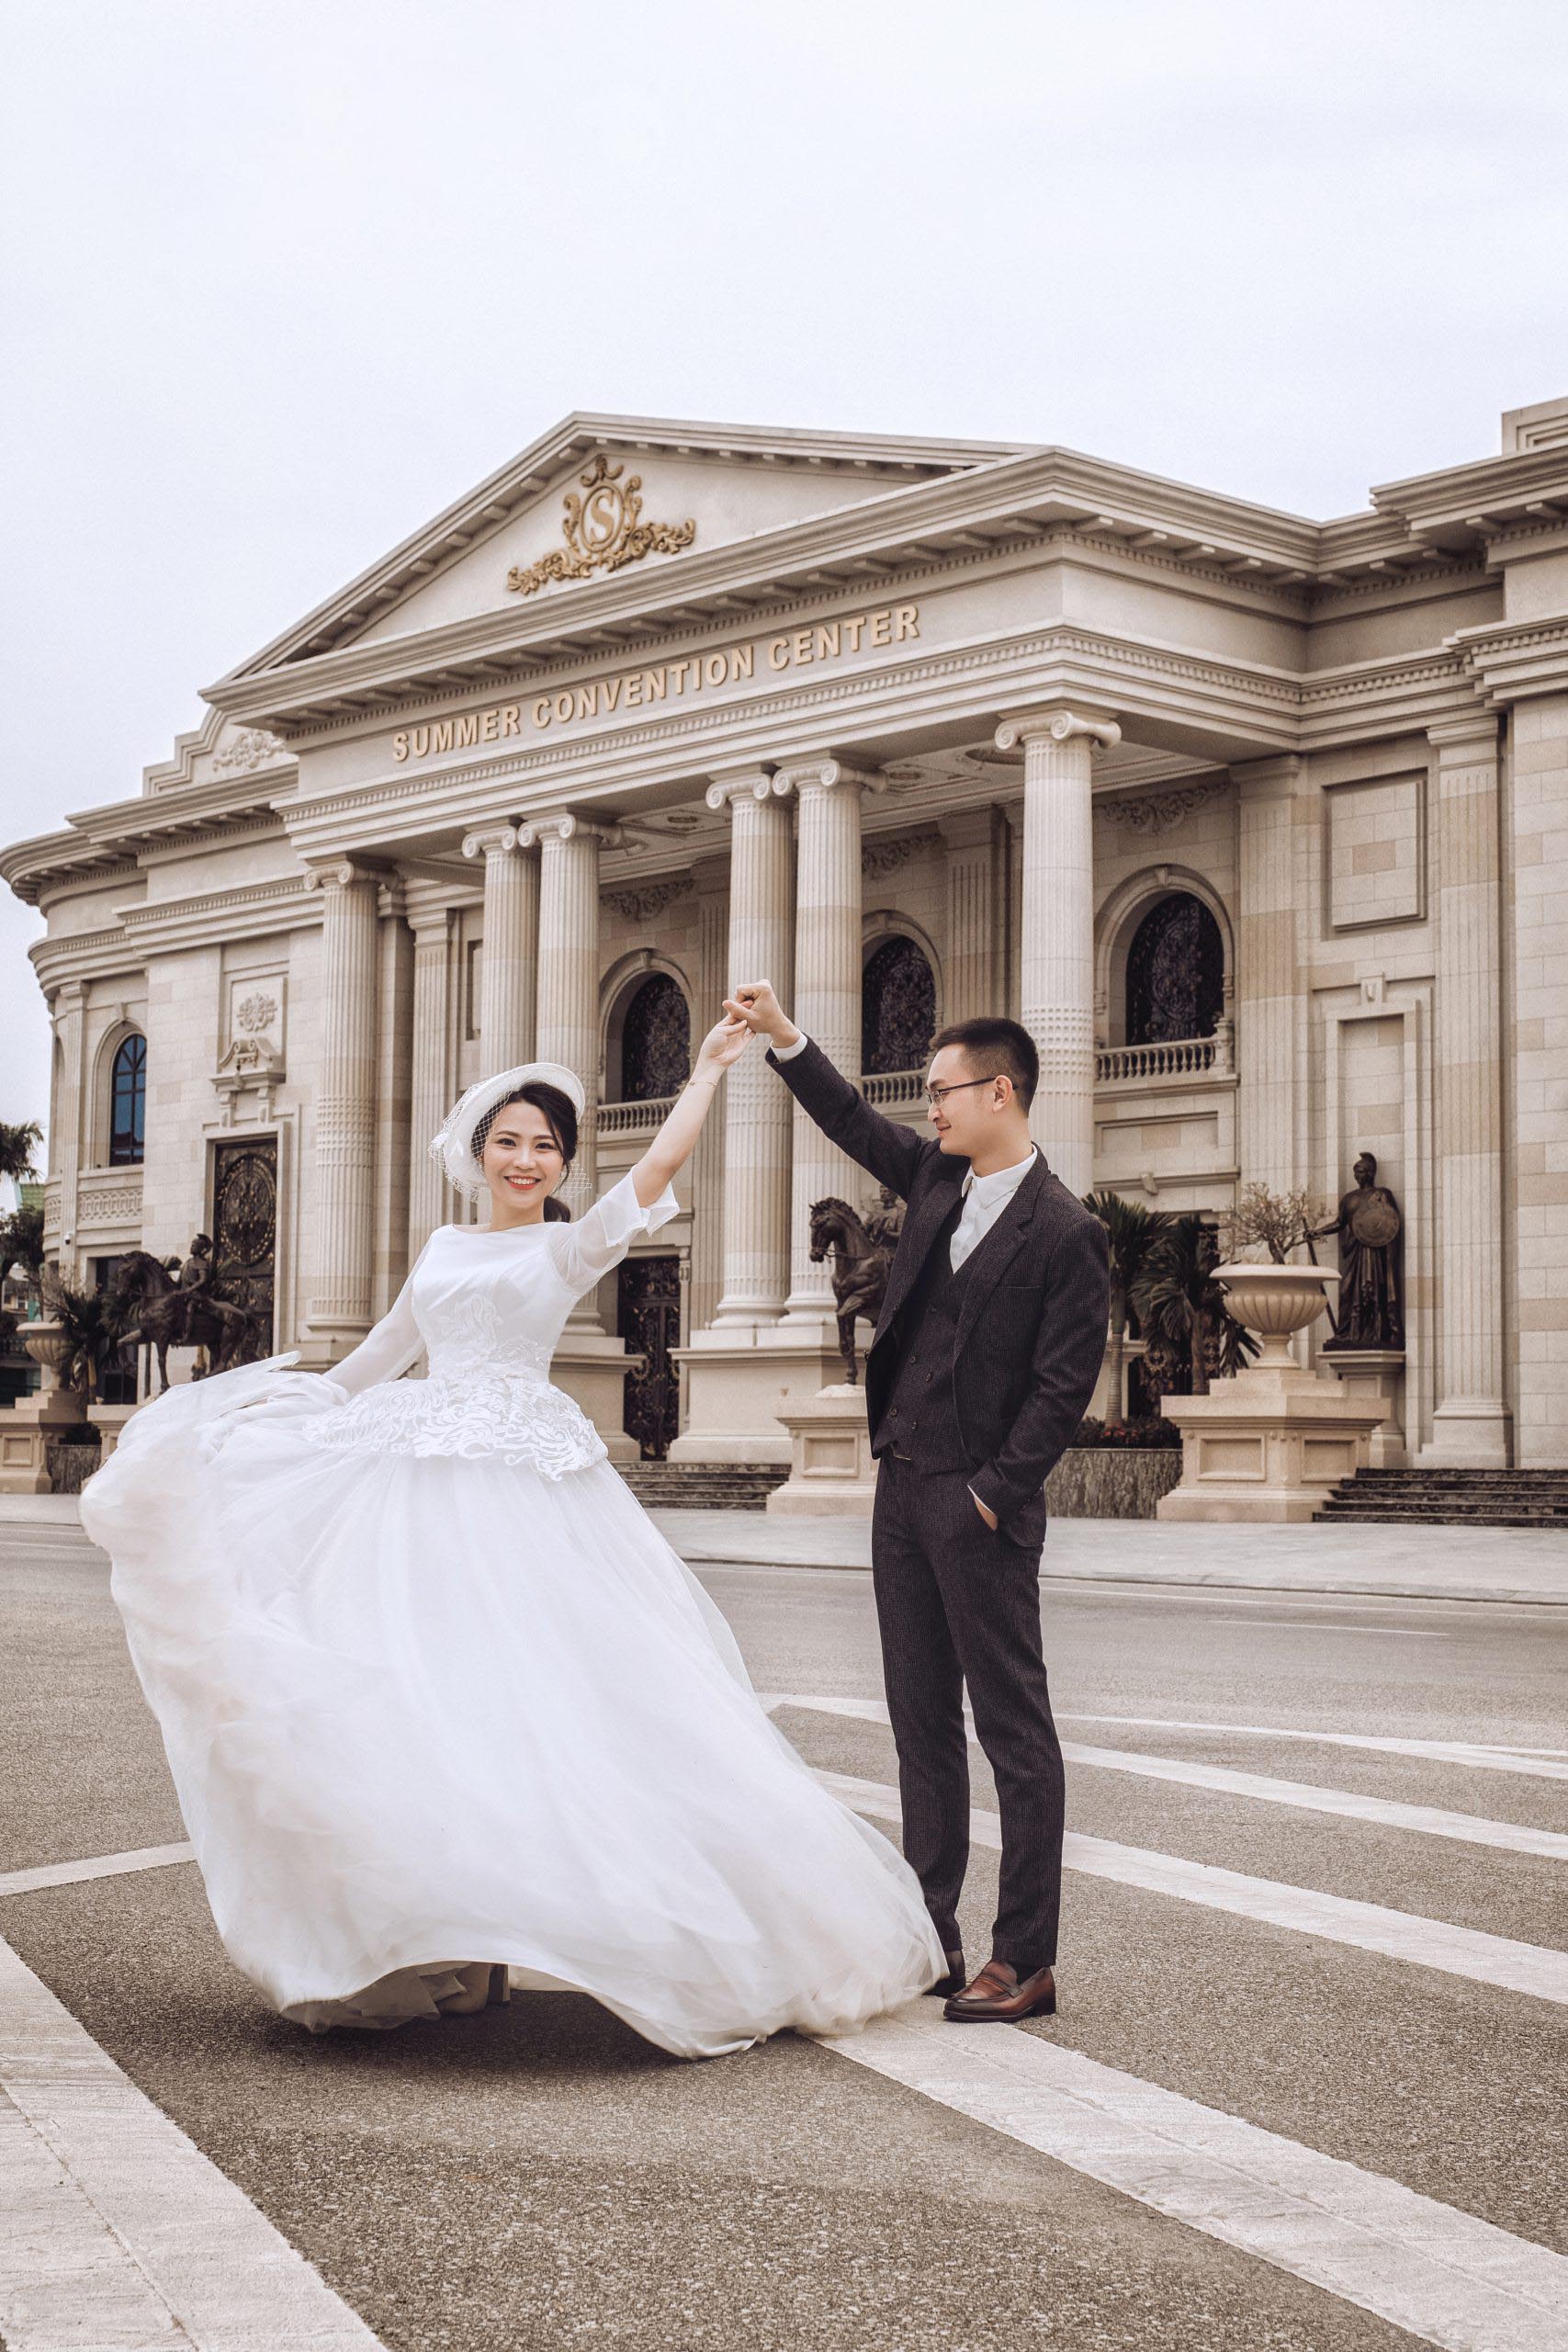 Bí quyết chọn váy cưới đẹp nhất cho cô dâu hiện đại: Những gợi ý đáng chú ý